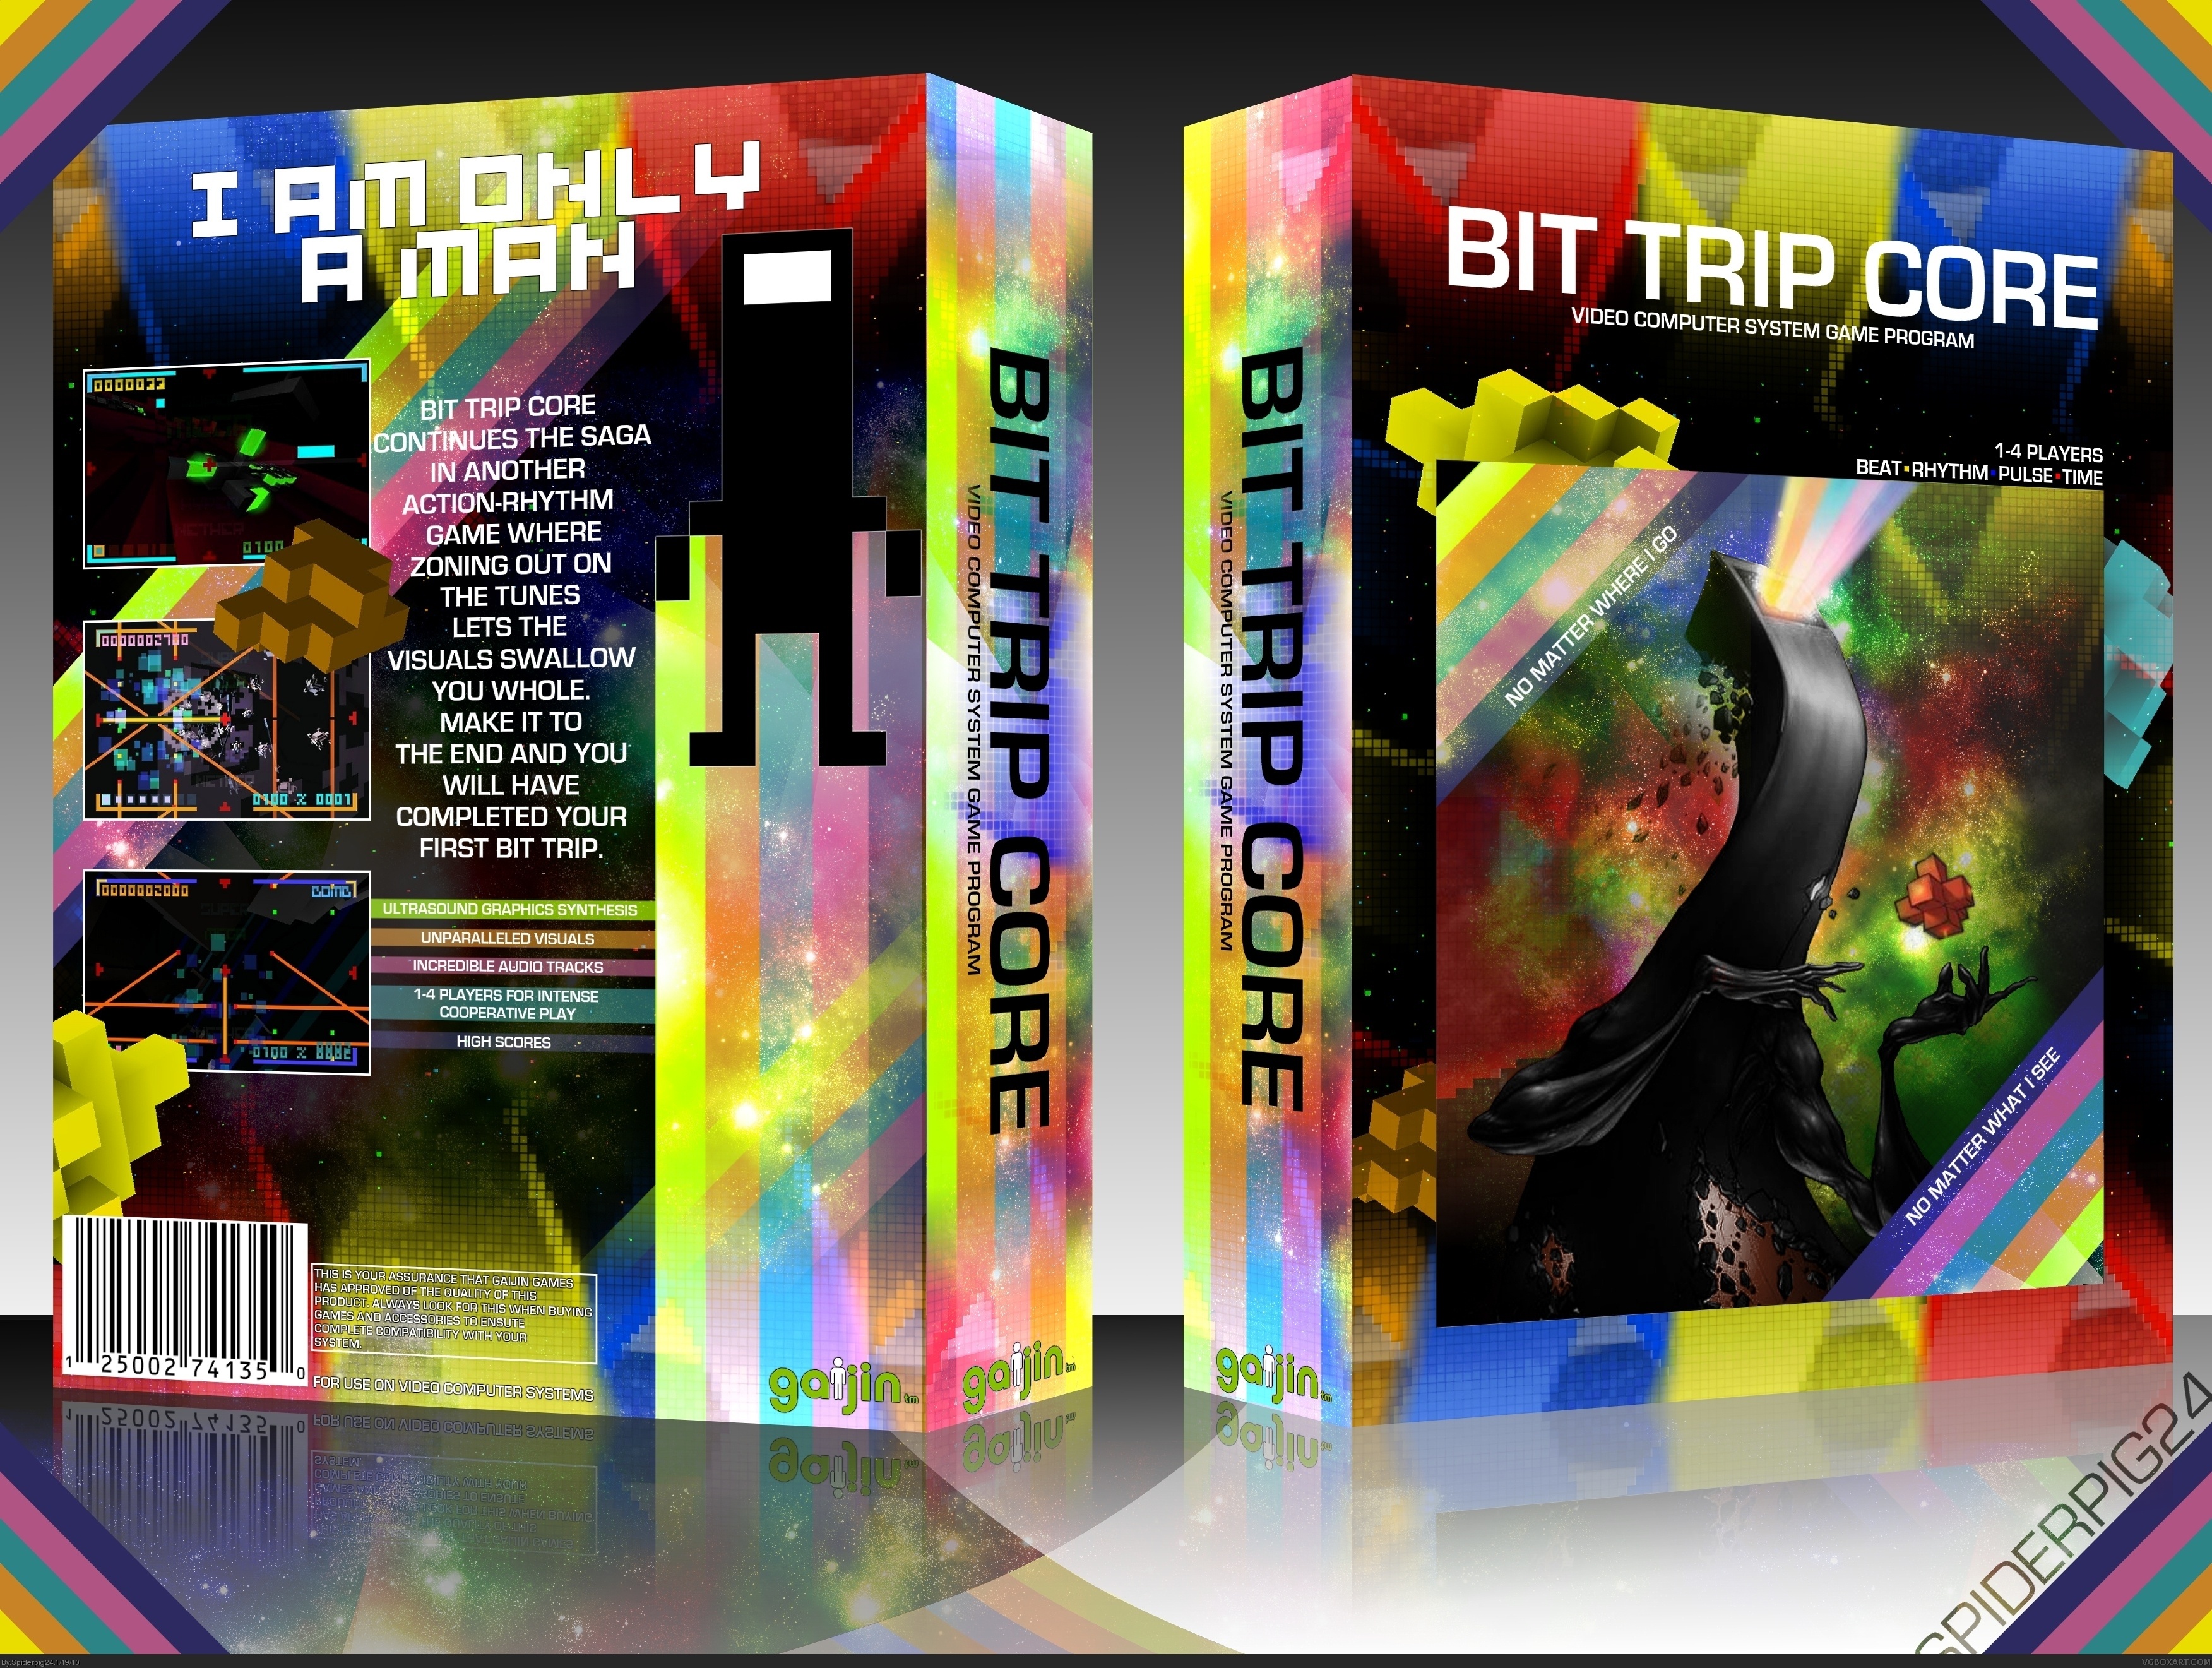 Bit. Trip Core box cover